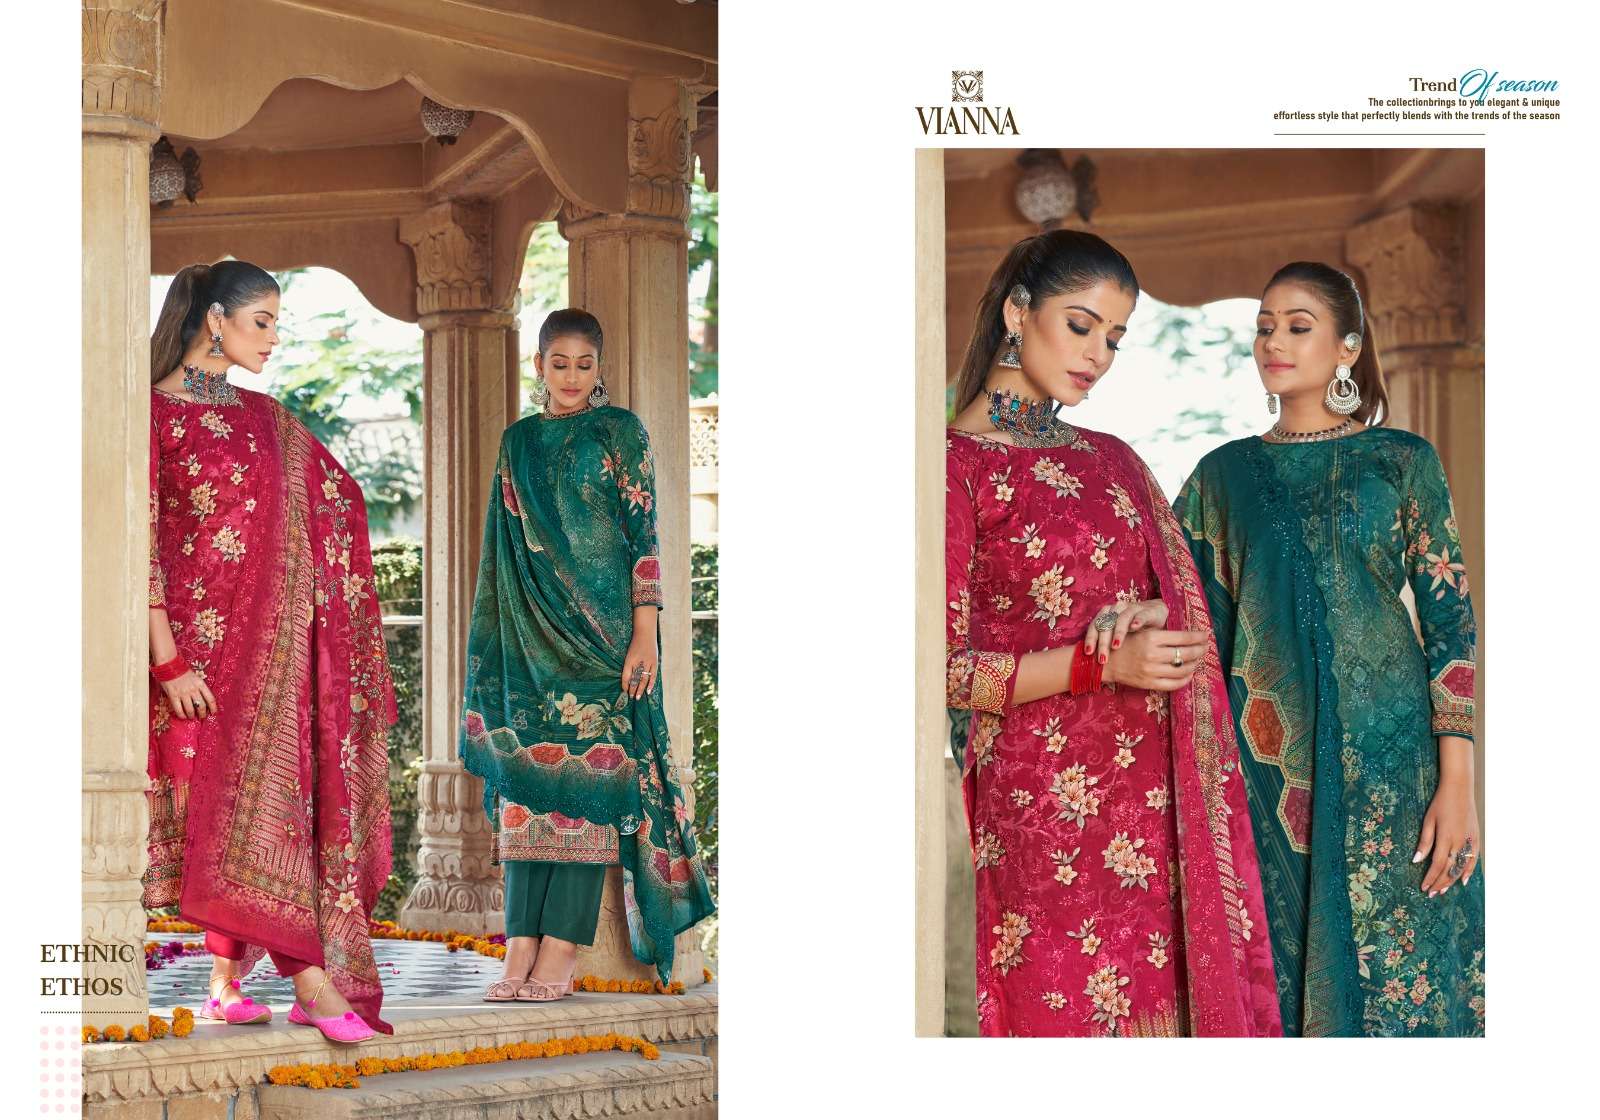 vianna simran 3901-3906 series pure cotton designer salwar kameez catalogue wholesaler surat 